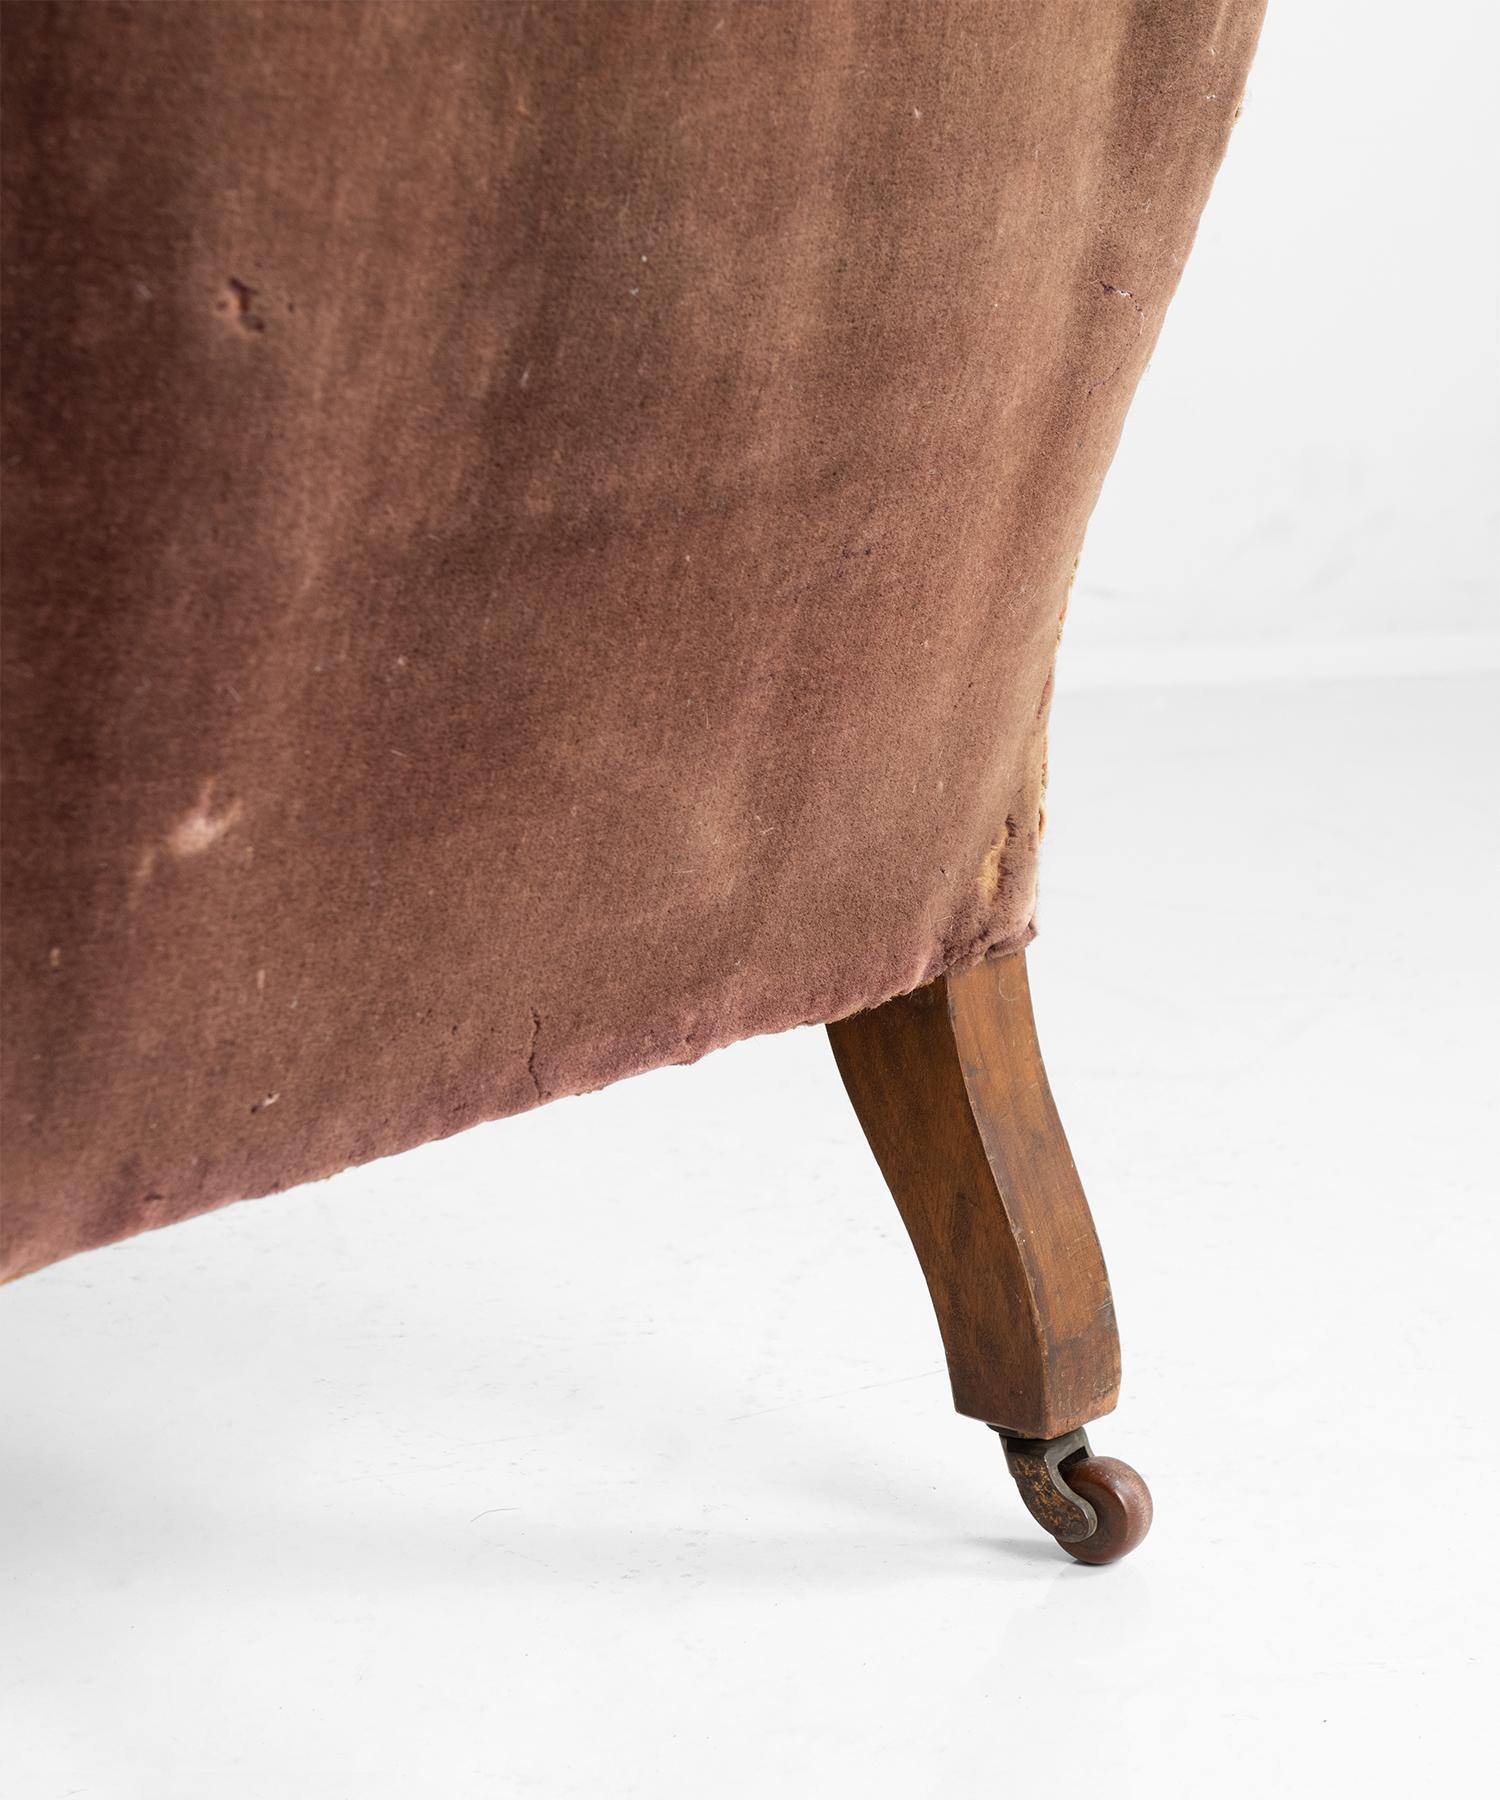 English Victorian Velvet Carpet Chair